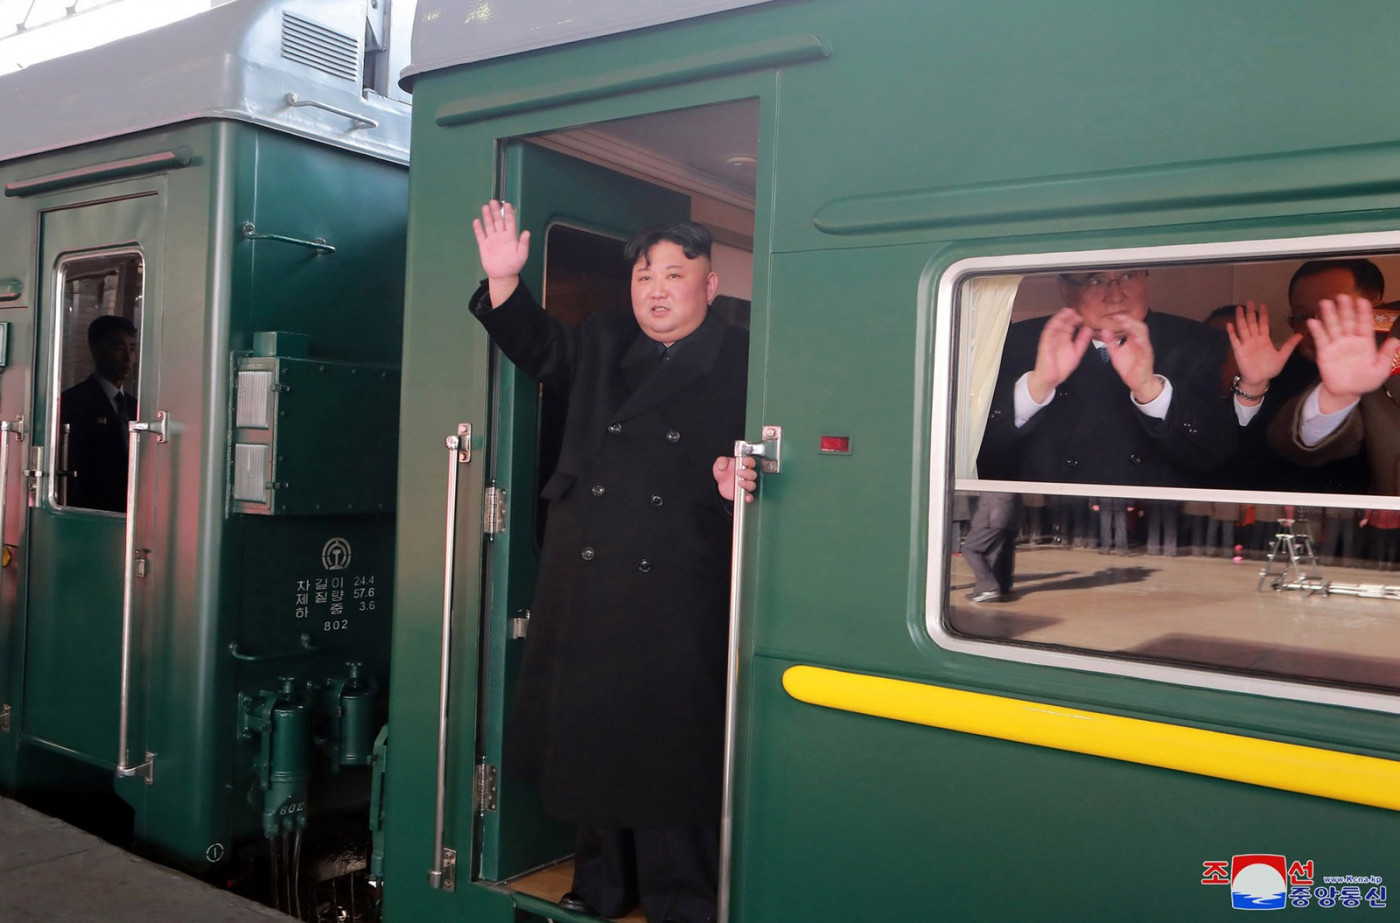 O líder da Coreia do Norte, Kim Jong-un, partiu em um trem neste sábado (23) com destino a Hanói, no Vietnã, para a reunião com o presidente dos Estados Unidos, Donald Trump